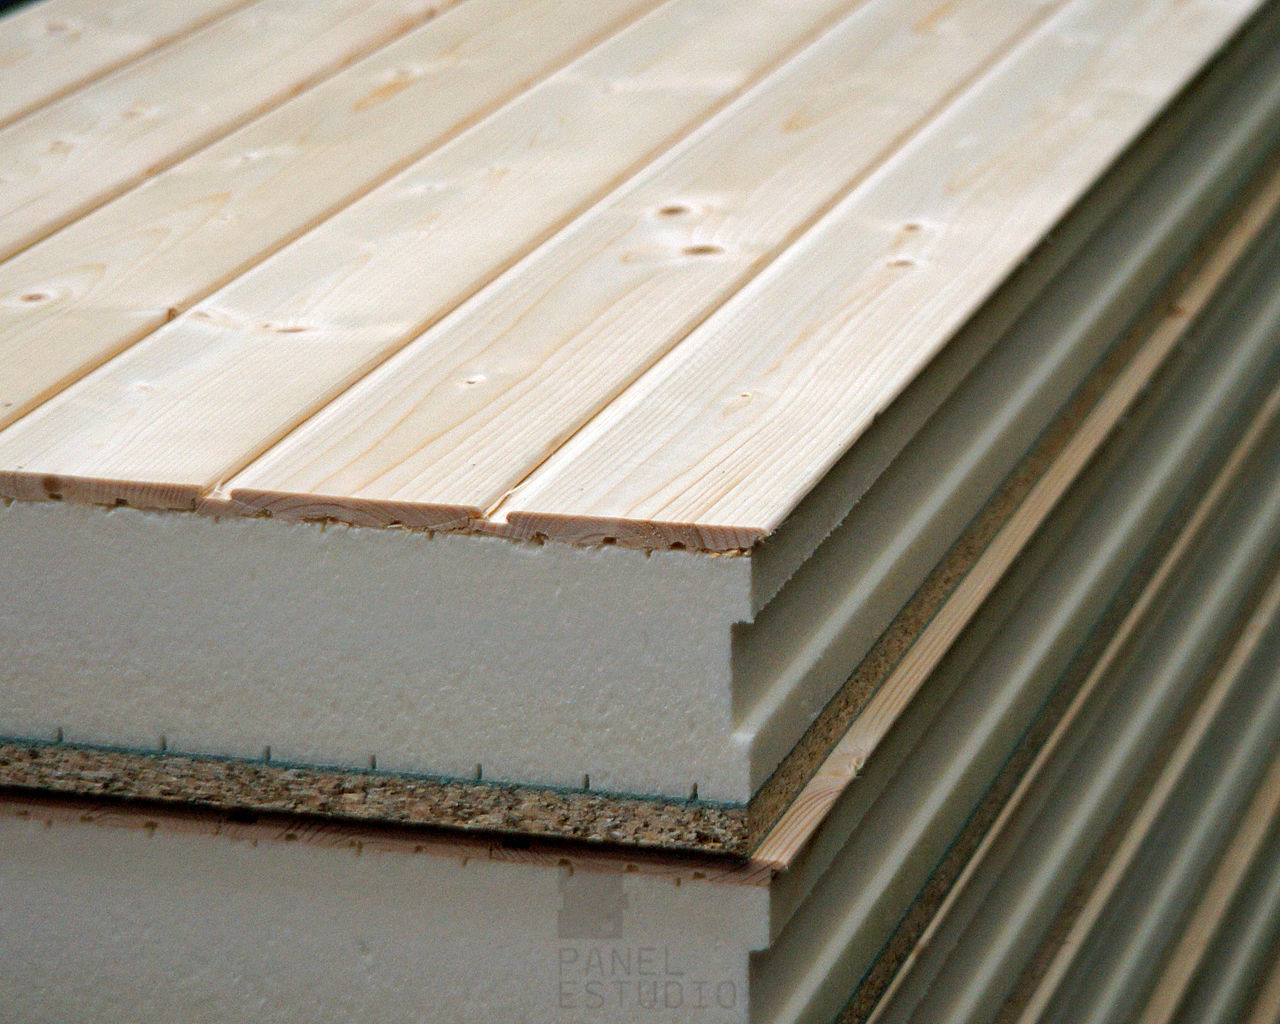 Panel de madera con núcleo aislante y acabado decorativo en madera natural. panelestudio